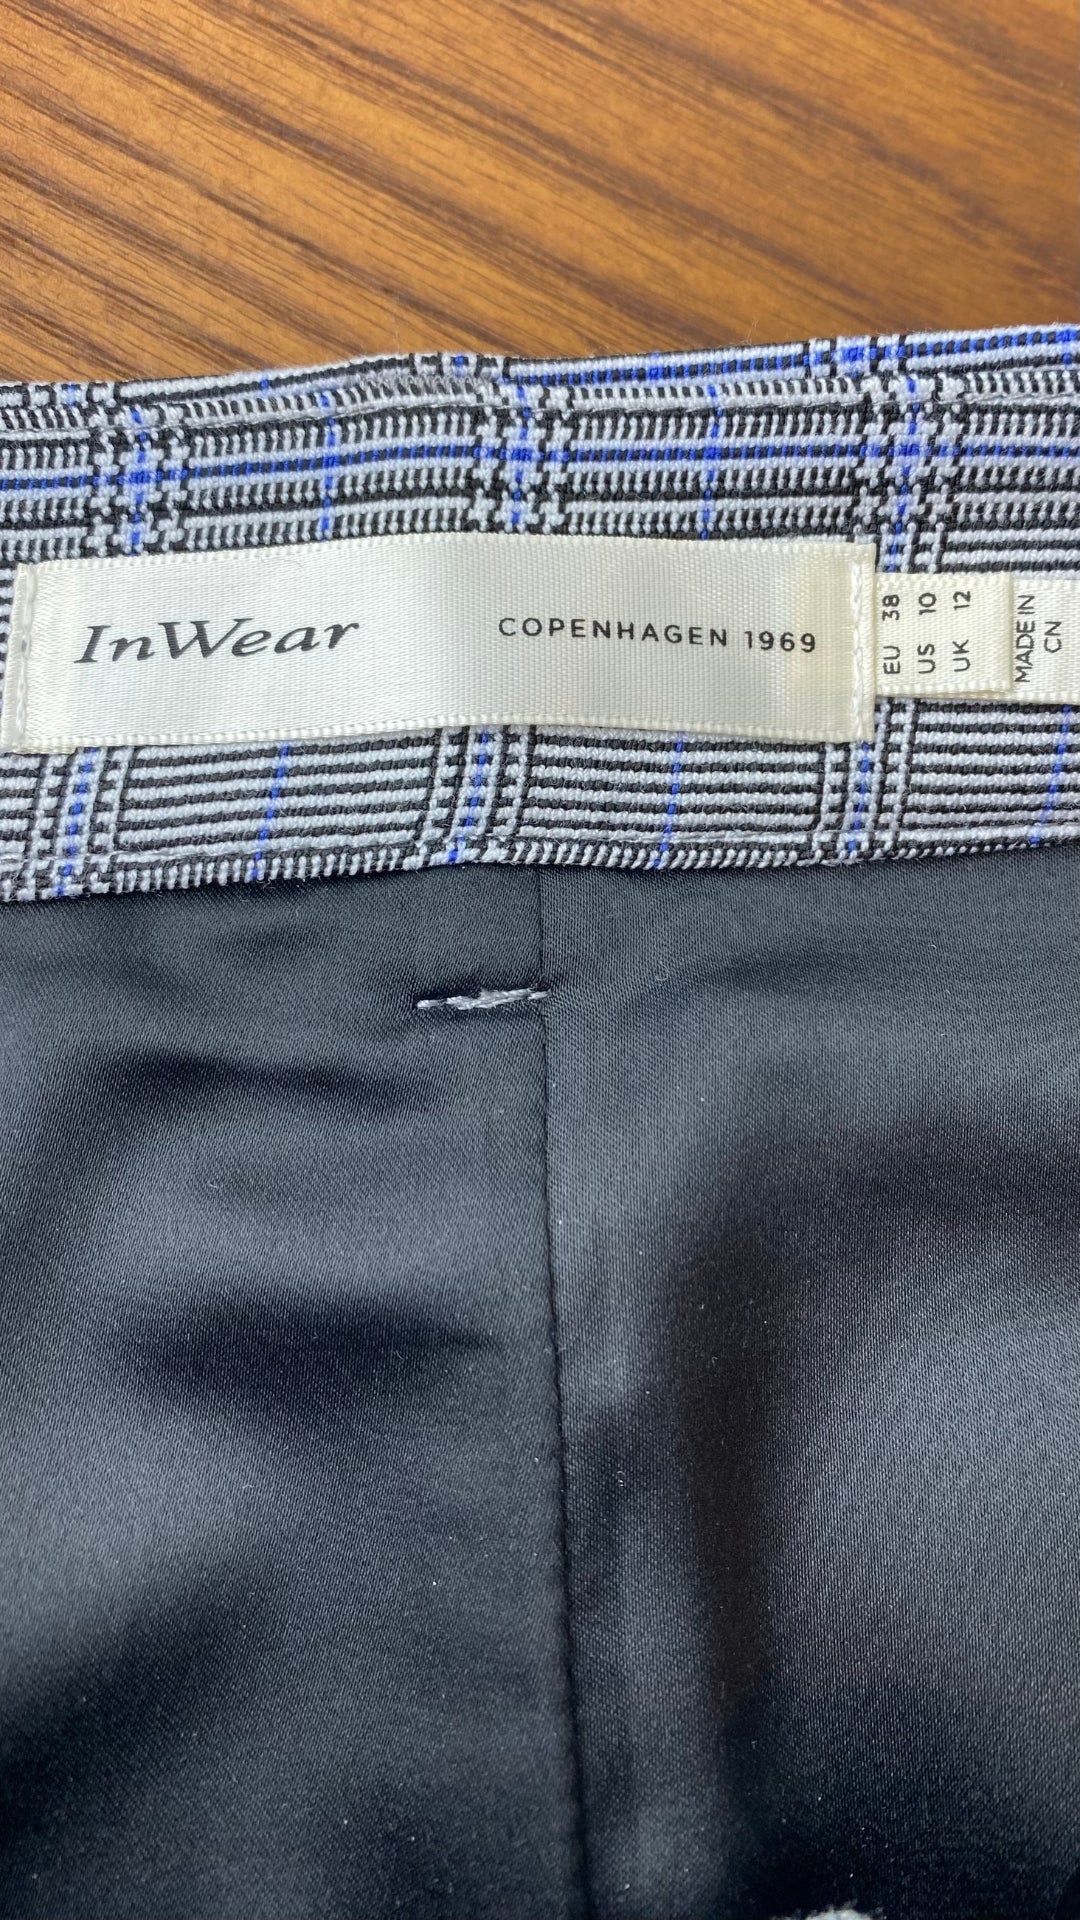 Jupe à carreaux (noir, bleu, crème) à poches Inwear, taille 6-8. Vue de l'étiquette de la marque et taille.